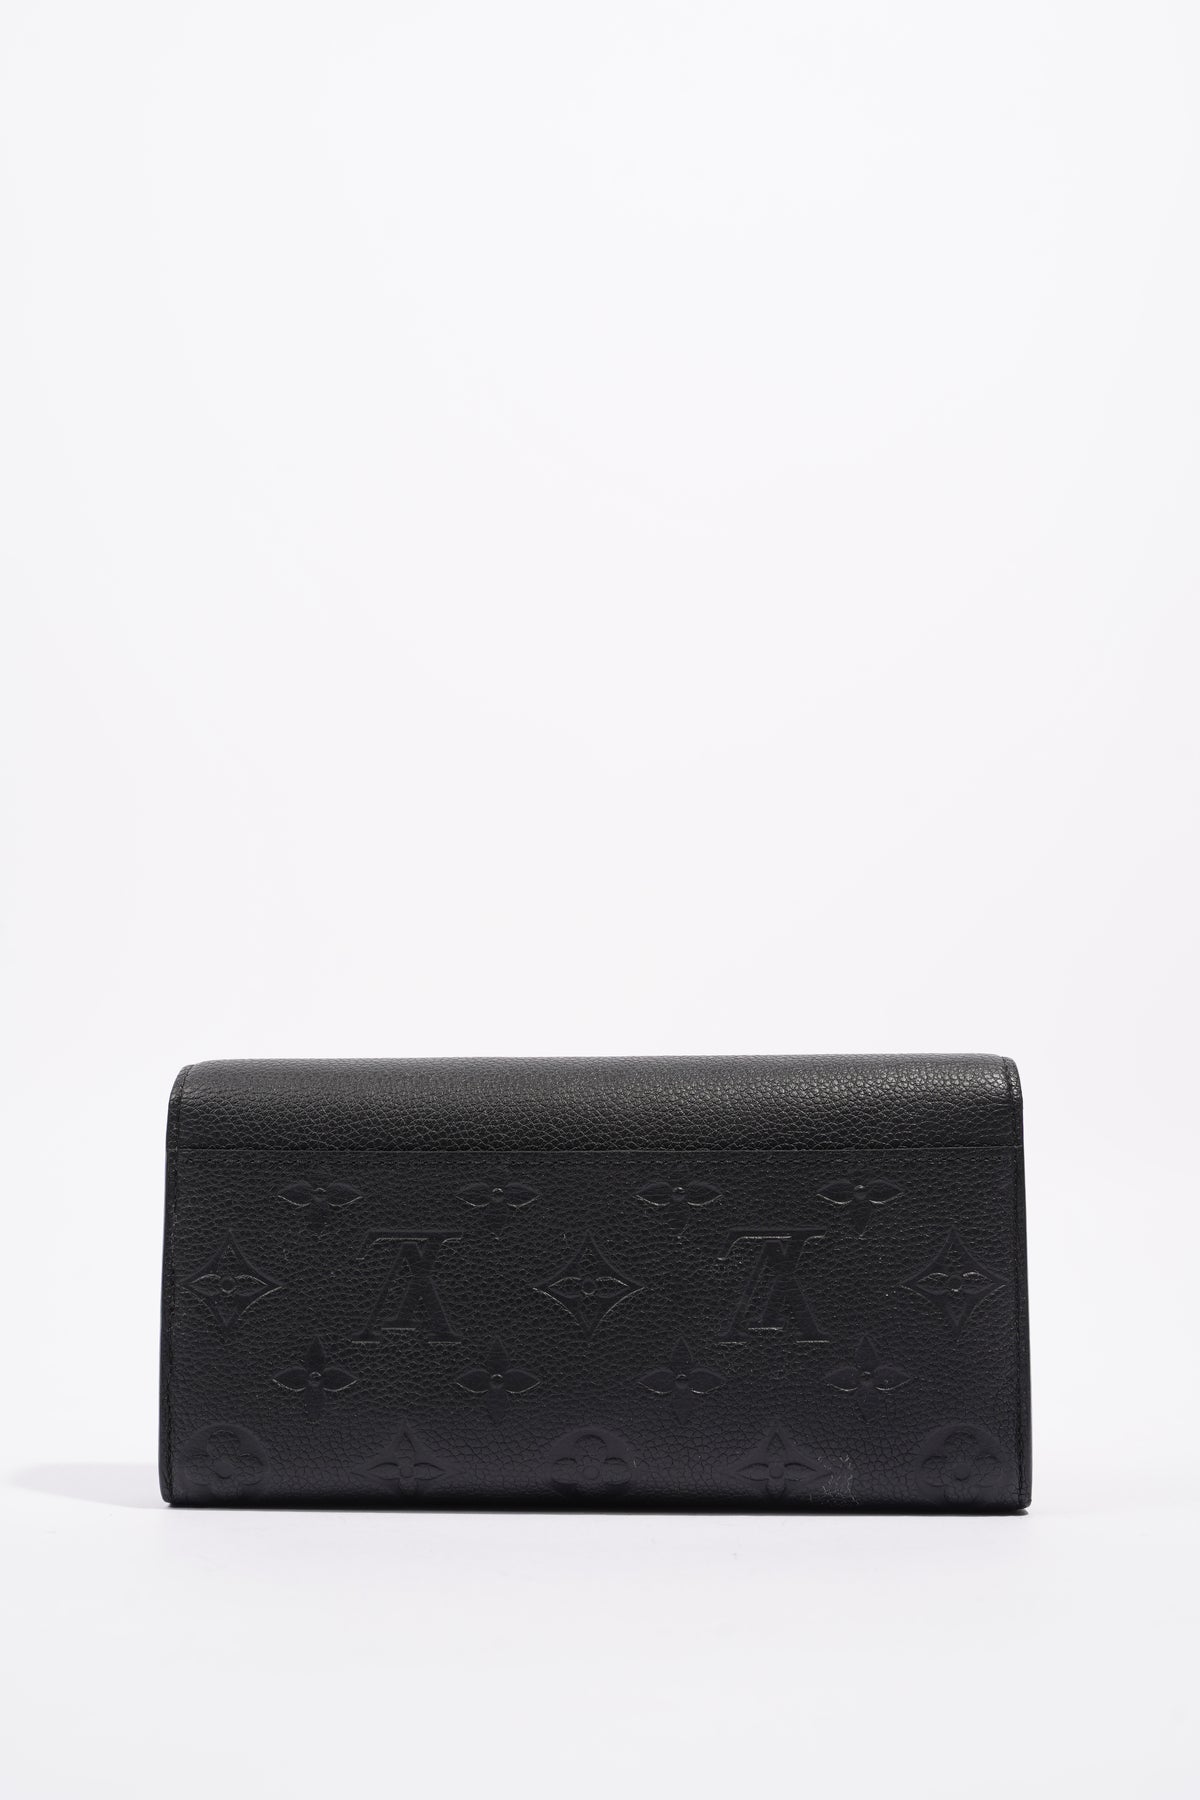 LOUIS VUITTON Long Wallet Portefeuille Sara LV Logo Embossed Black